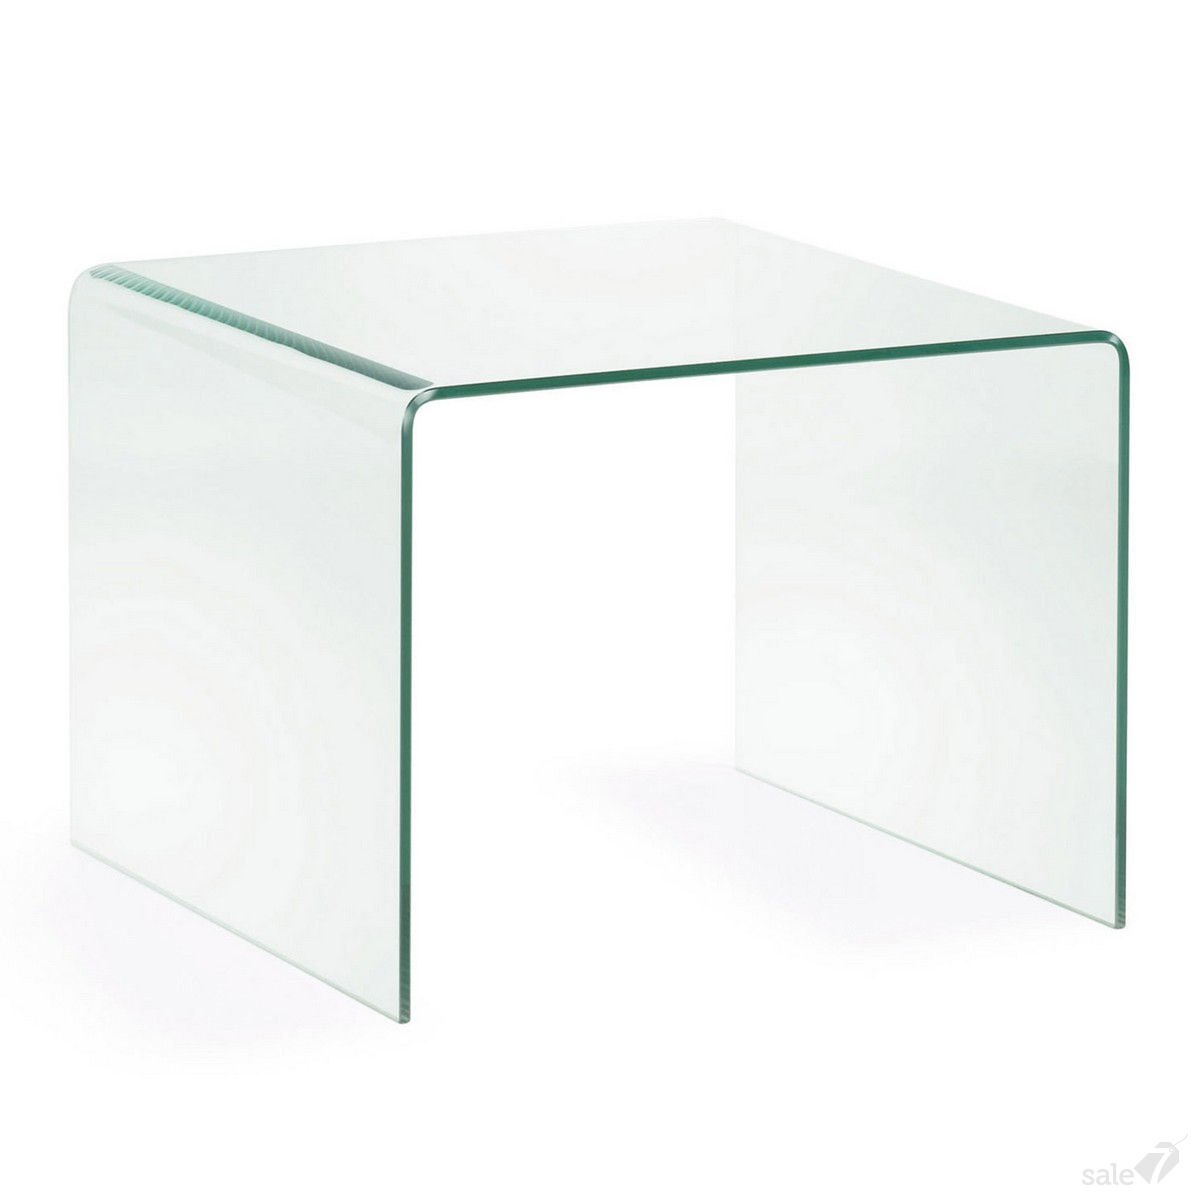 Мир гнутого. Письменный стол Burano. Журнальн стол 1400 *800 стекло 6 мм. Журнальный стол Glass BS 7376 1990. Стеклянный столик.